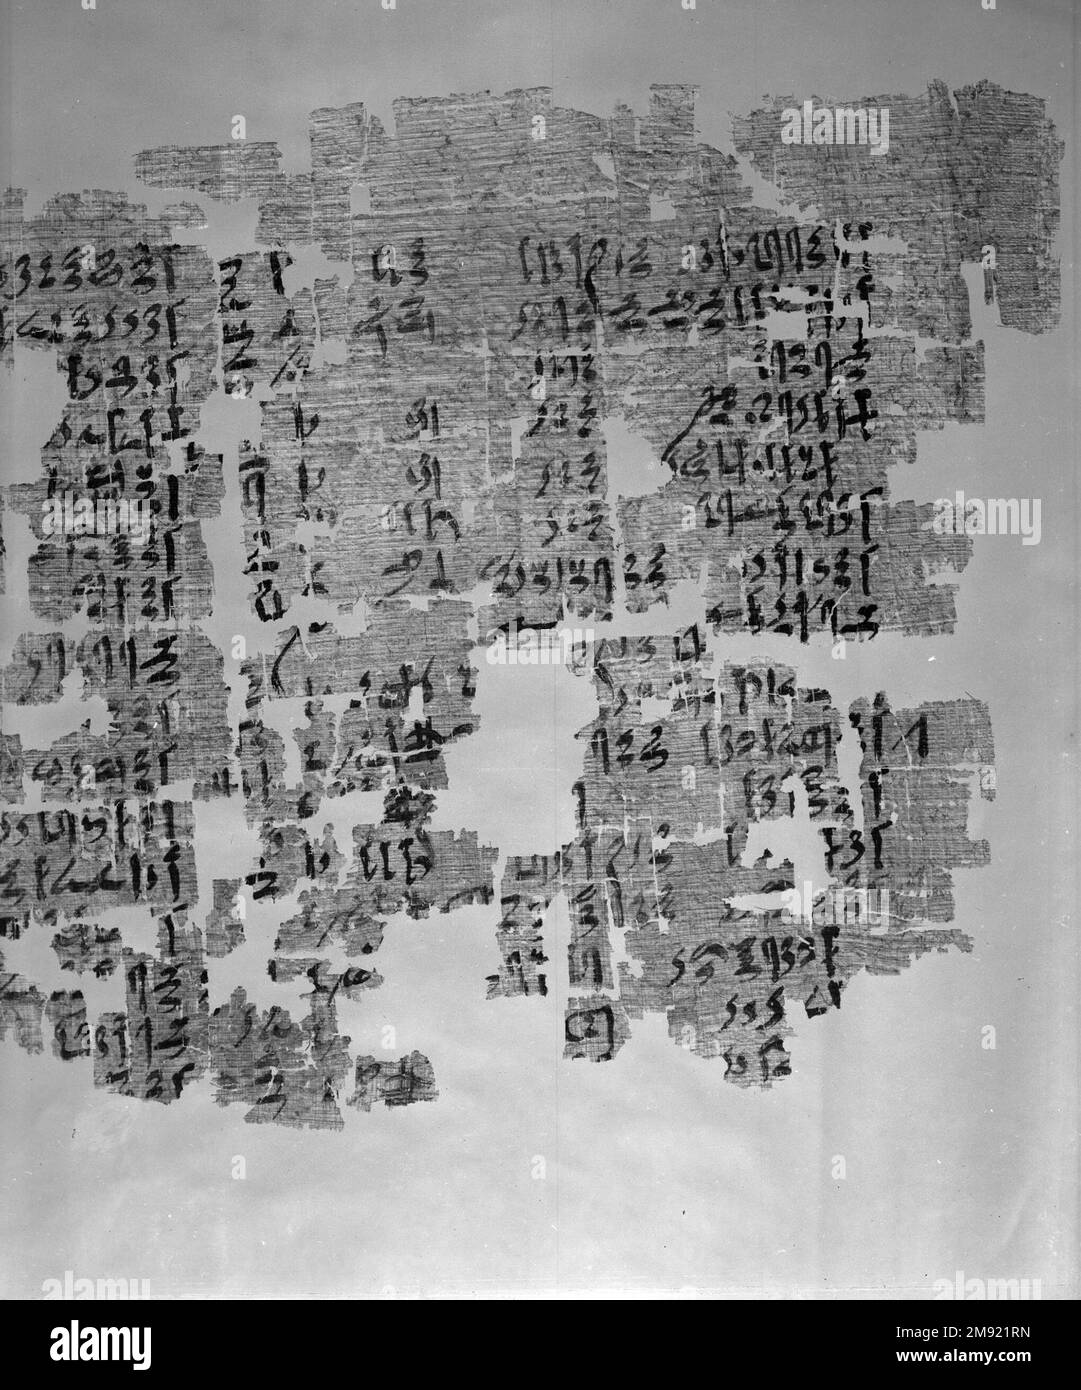 Teil eines historischen Textes Teil eines historischen Textes, ca. 1809-1743 B.C.E. Papyrus, Tinte, 35,1446a-e: 11 1/2 x 71 5/8 Zoll (29,2 x 182 cm). Nach der Fertigstellung war das Papyrus, zu dem dieses Fragment gehörte, fast 1,80 m lang. Die Texte sind in einer kursiven Form von Hieroglyphen geschrieben, die Hieratisch genannt werden. Unterschiede in der Handschrift und in den beschriebenen historischen Ereignissen zeigen, dass verschiedene Schriftzeichen über mehrere Generationen hinweg neue Inschriften hinzugefügt haben. Der wichtigste Text beschreibt die Bemühungen einer dreizehnten Dynastie Theban-Adelsfrau namens Senebtisi, die rechtmäßige Eigentümerschaft von neunzig... Stockfoto